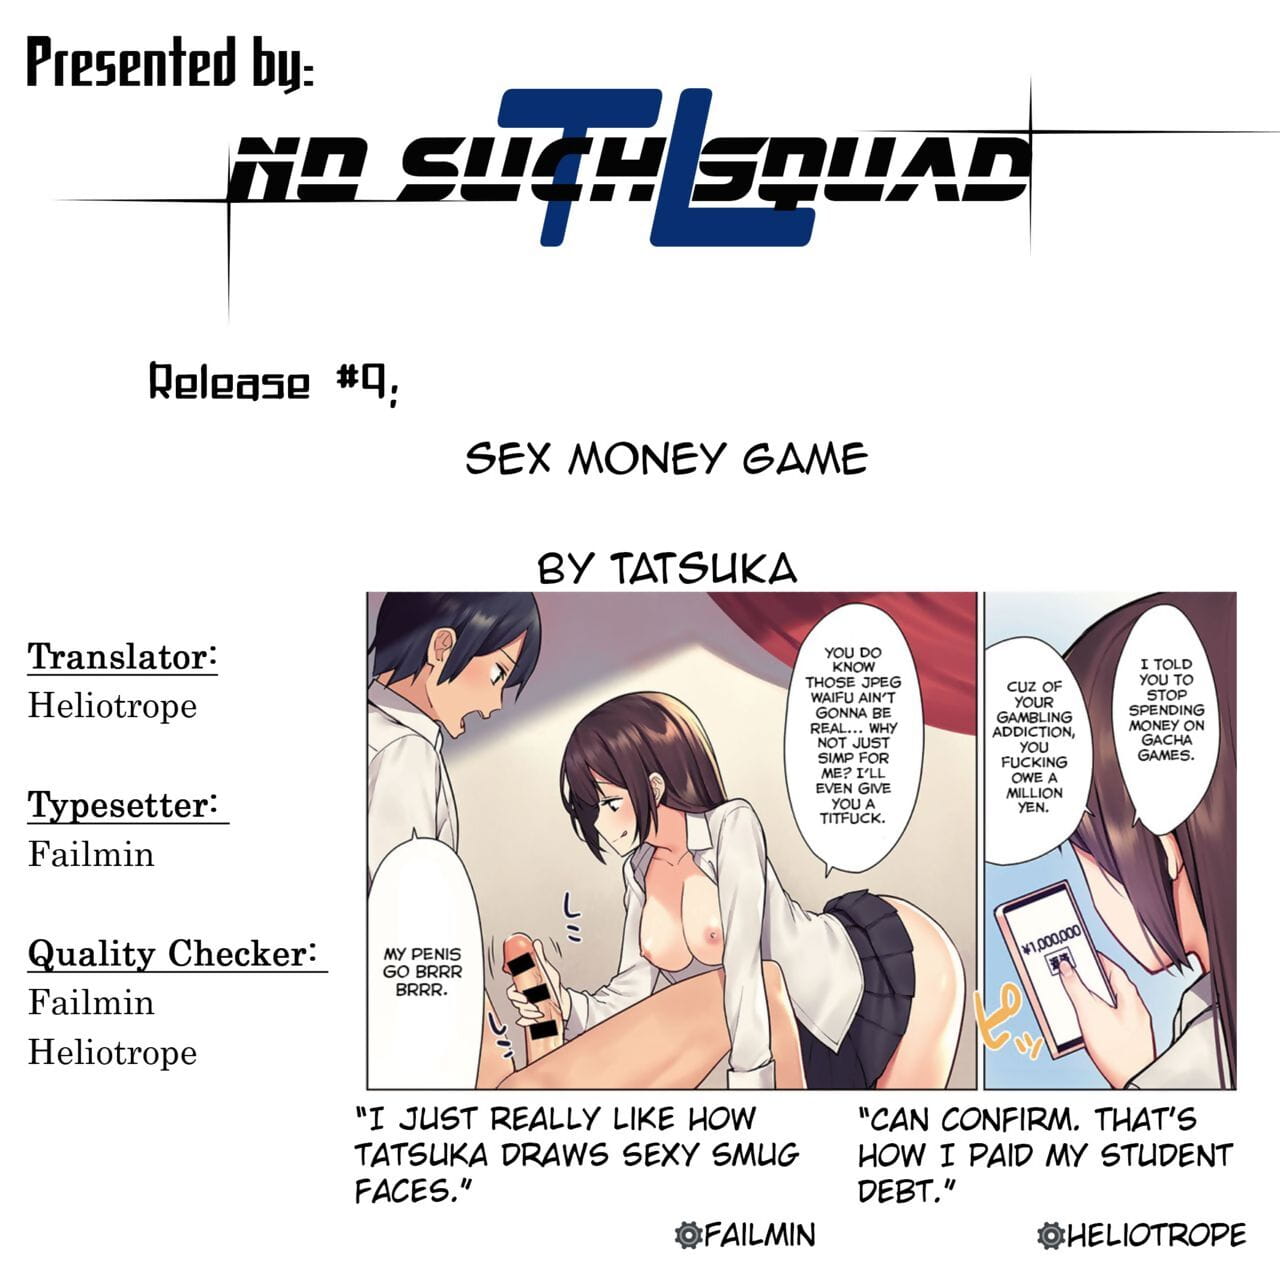 Tatsuka Sexo Dinheiro Jogo Quadrinhos anthurium 2019 09 inglês =nss= digital